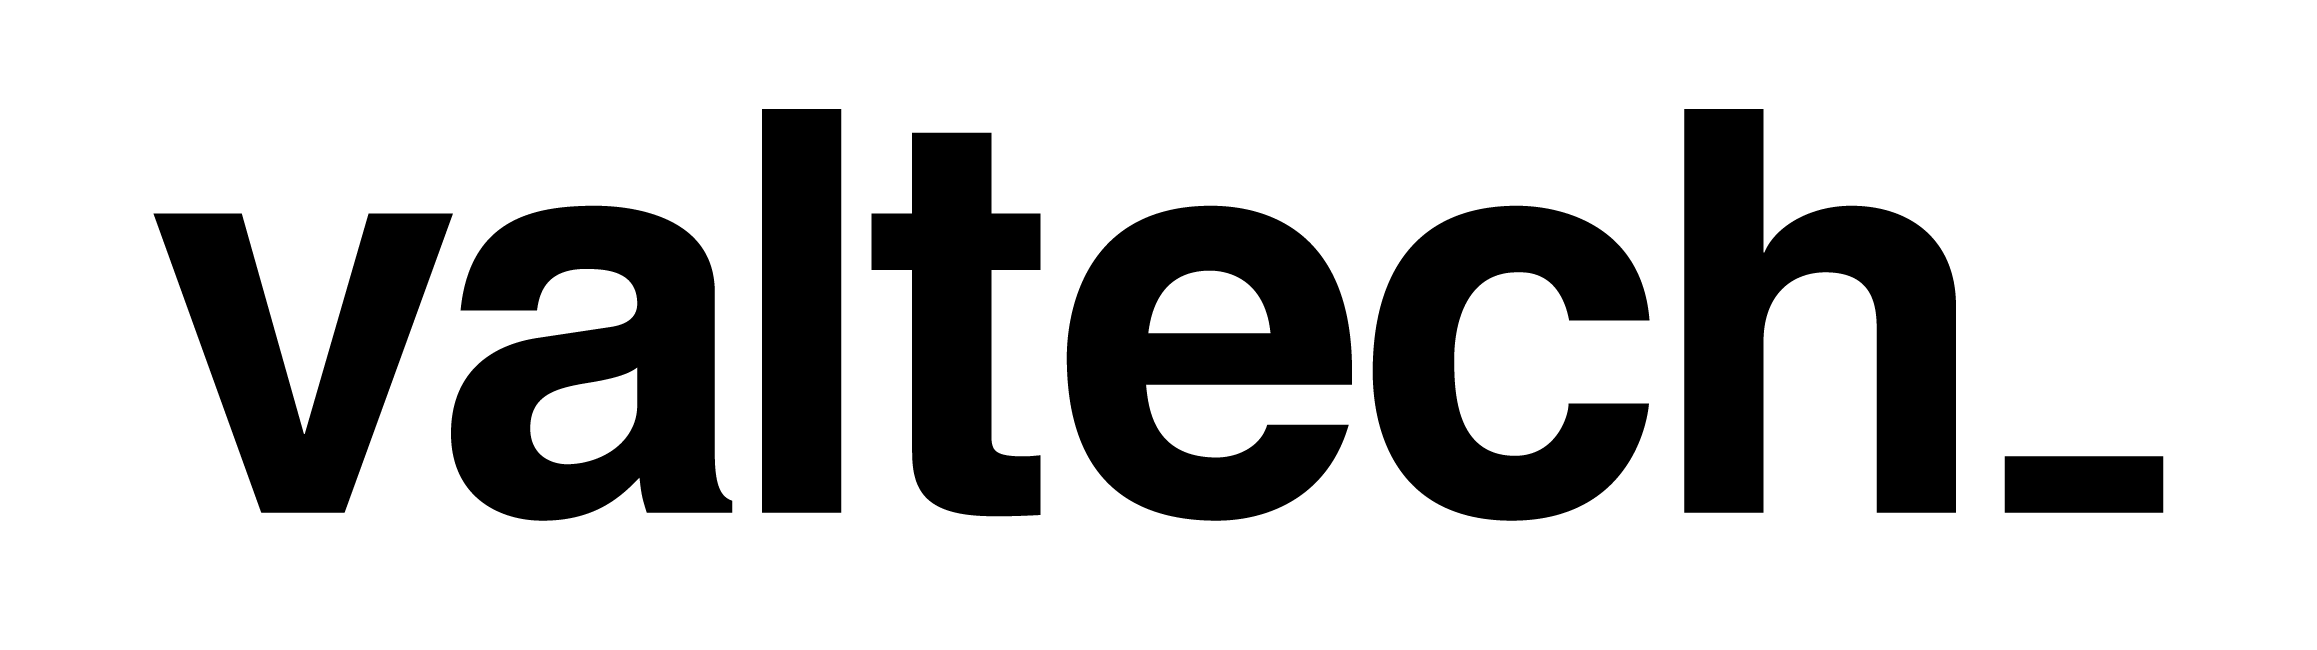 valtech logo